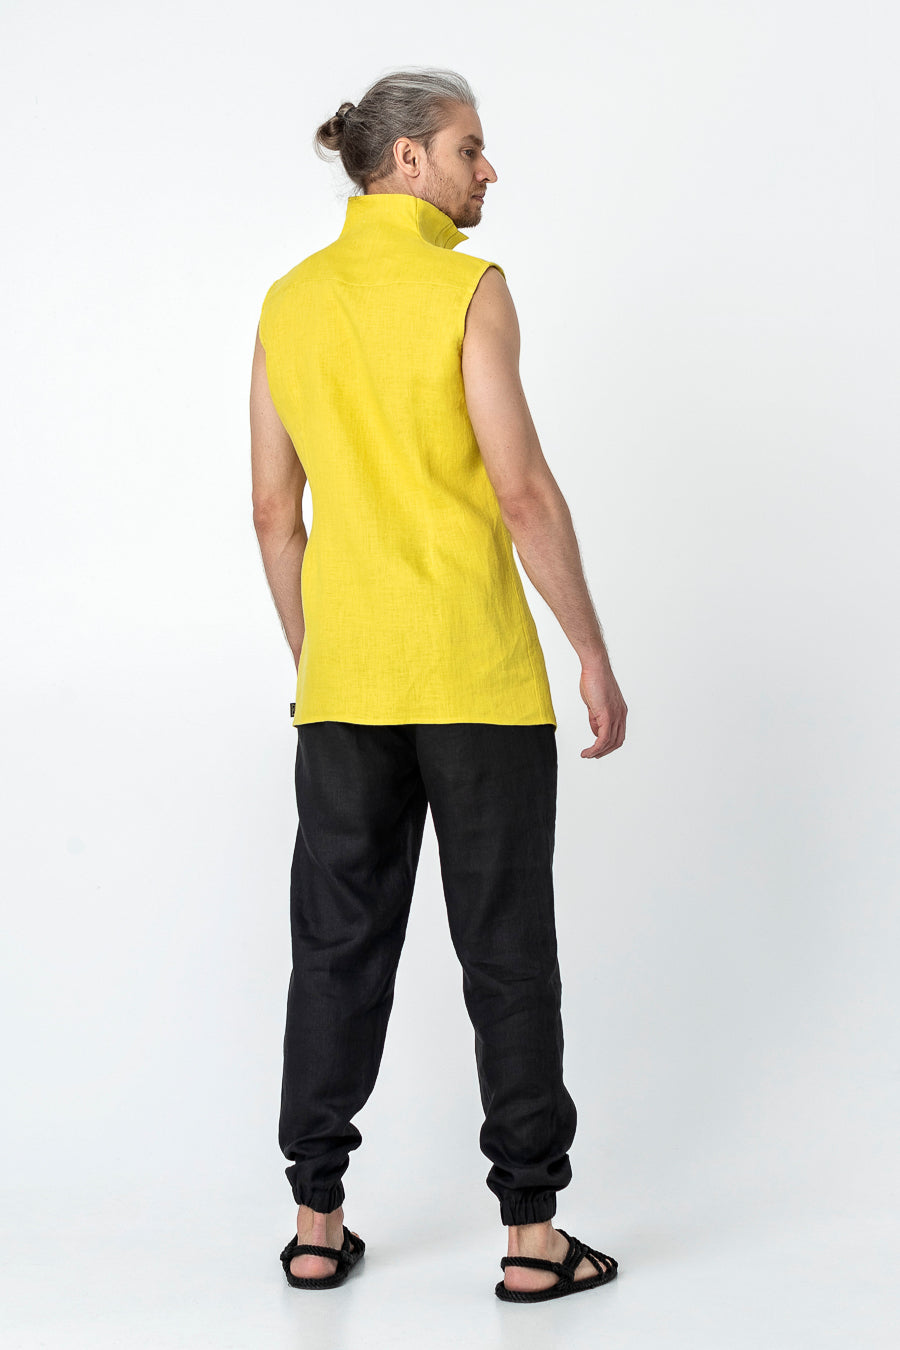 SHIRO | Linen modern vest for men - Mezzoroni